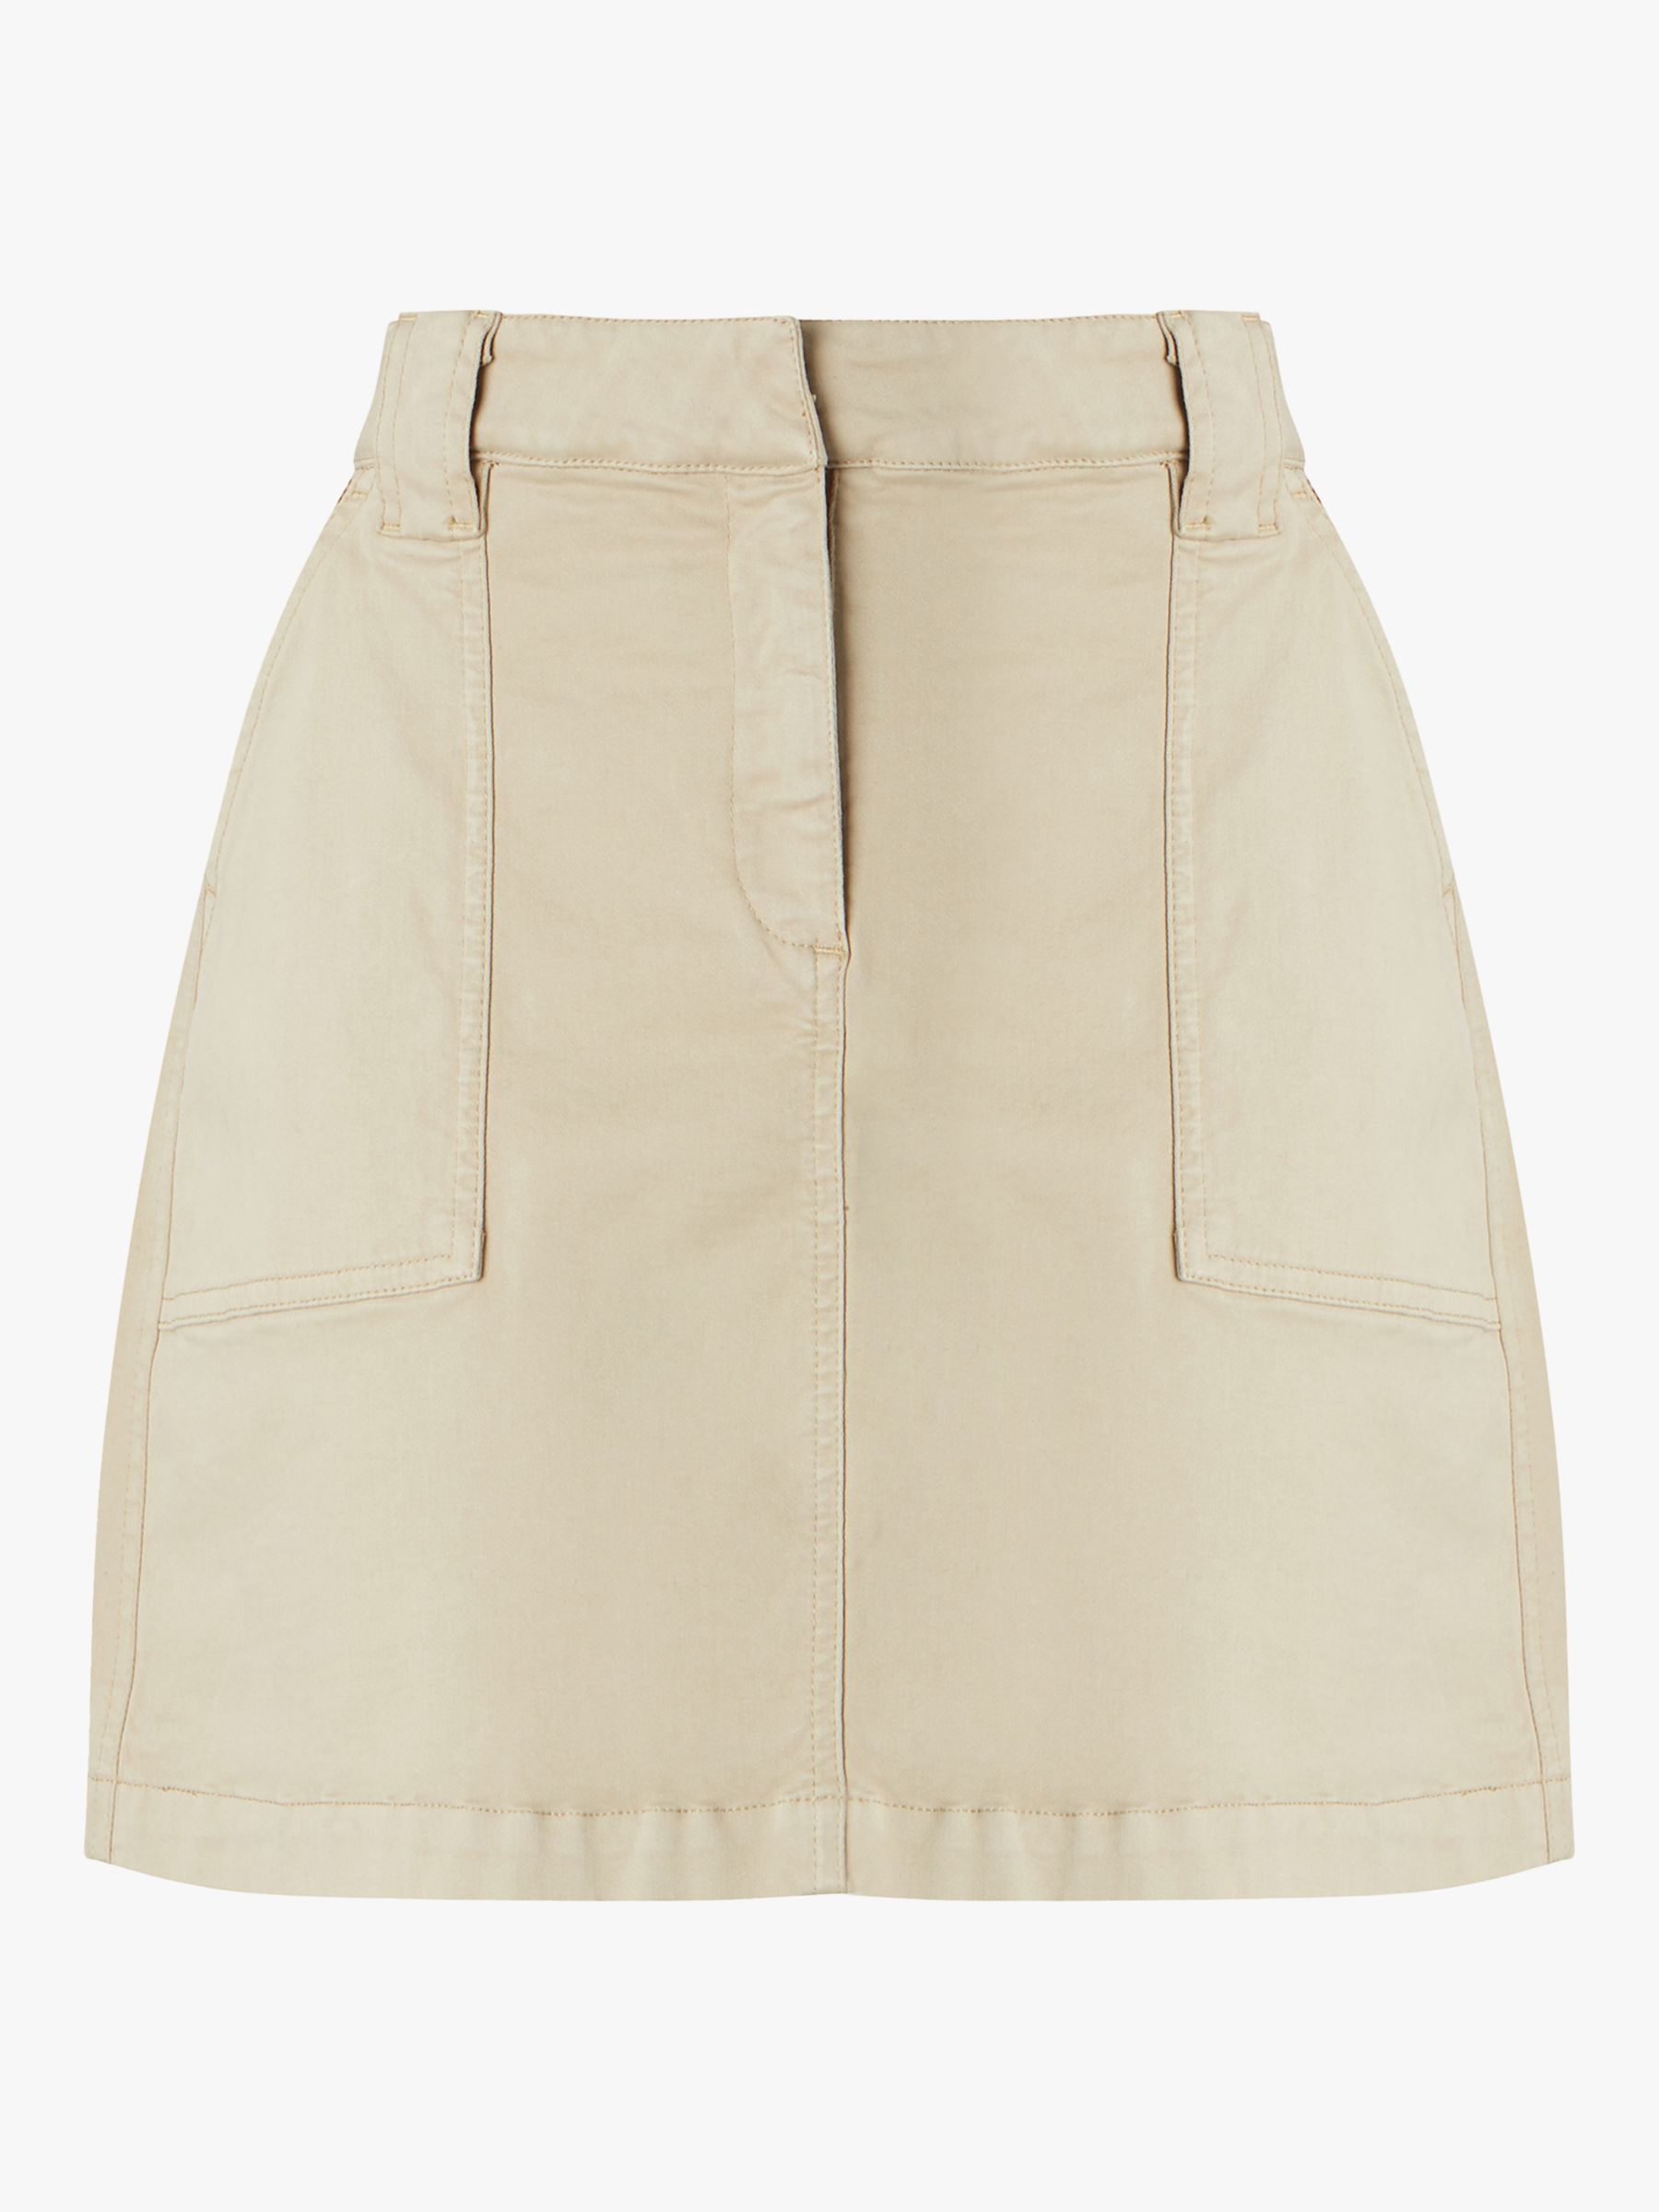 Buy Baukjen Tate Organic Cotton Blend Skirt, Sand Online at johnlewis.com